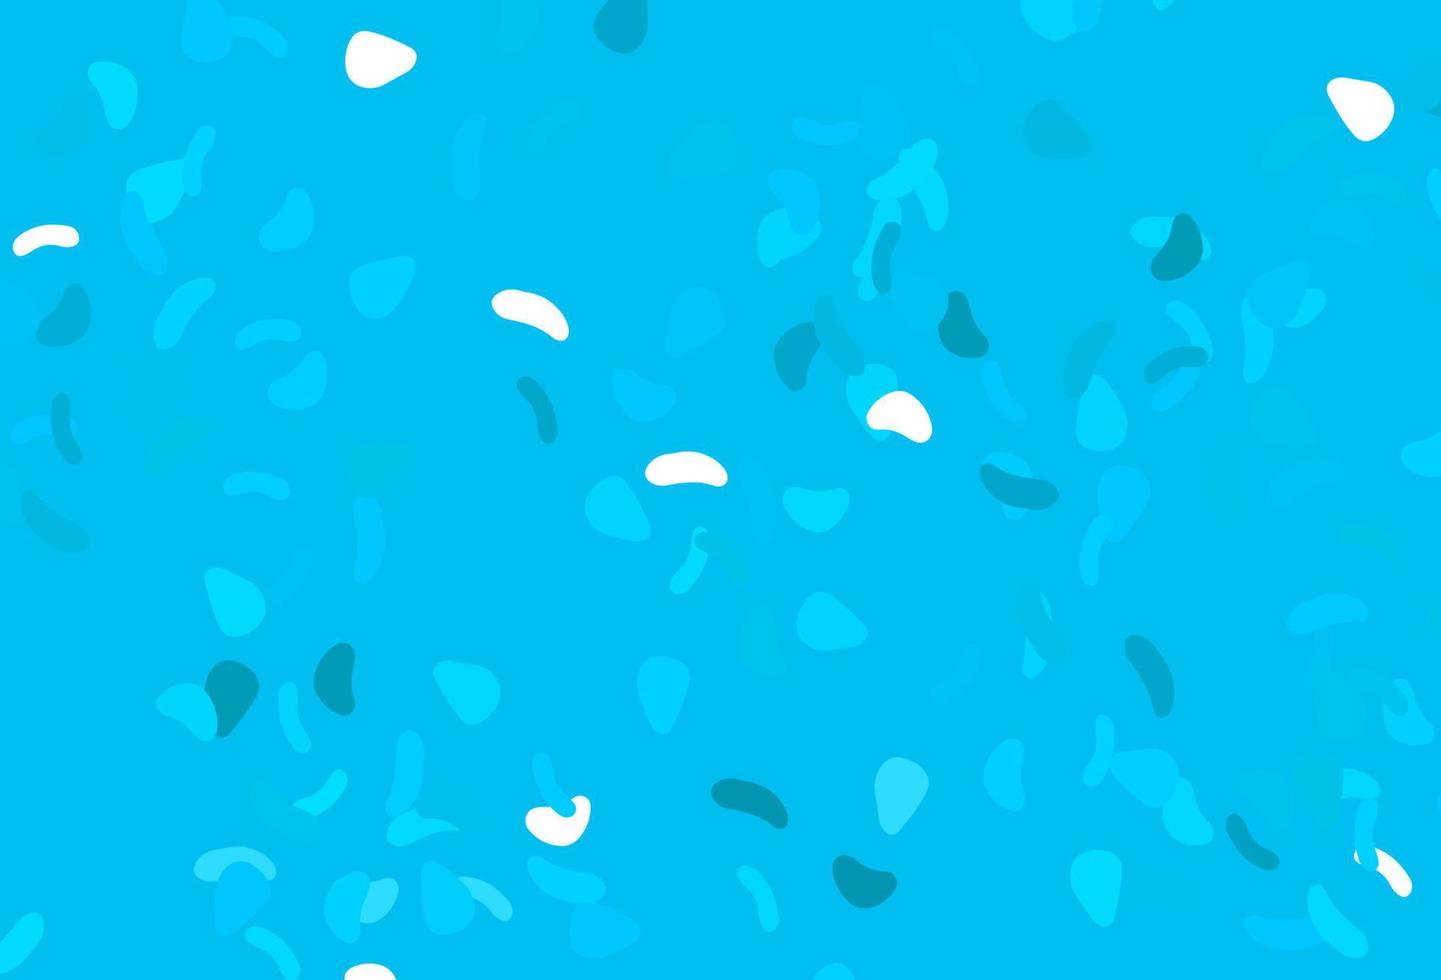 motif vectoriel bleu clair avec des formes chaotiques.